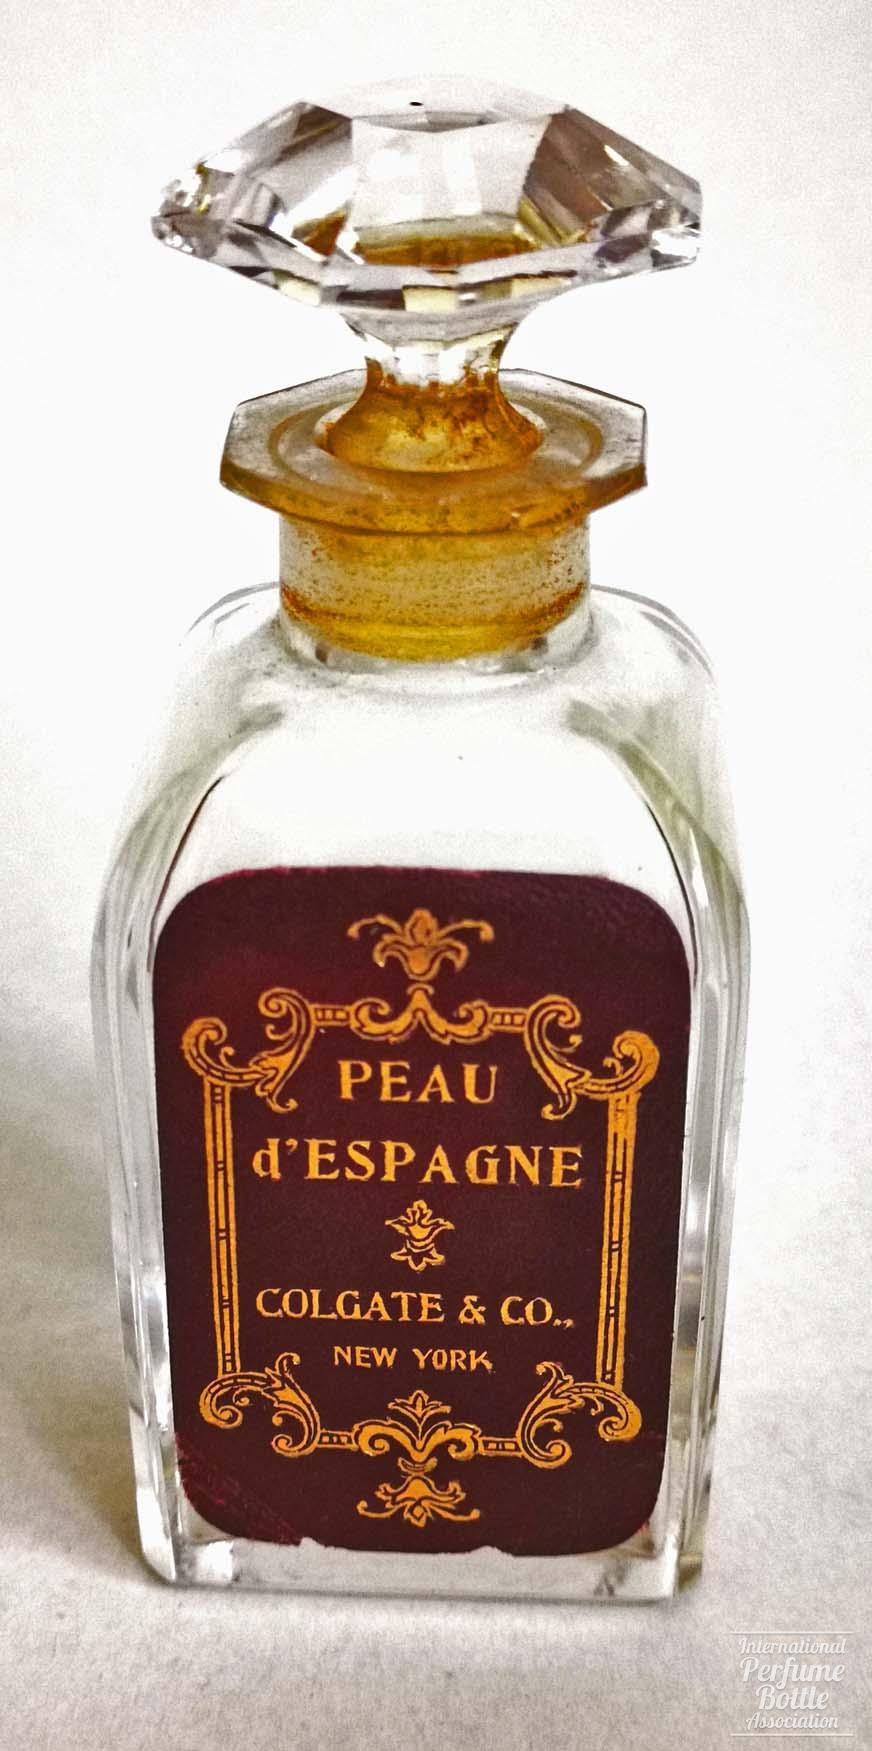 "Peau d'Espagne" by Colgate